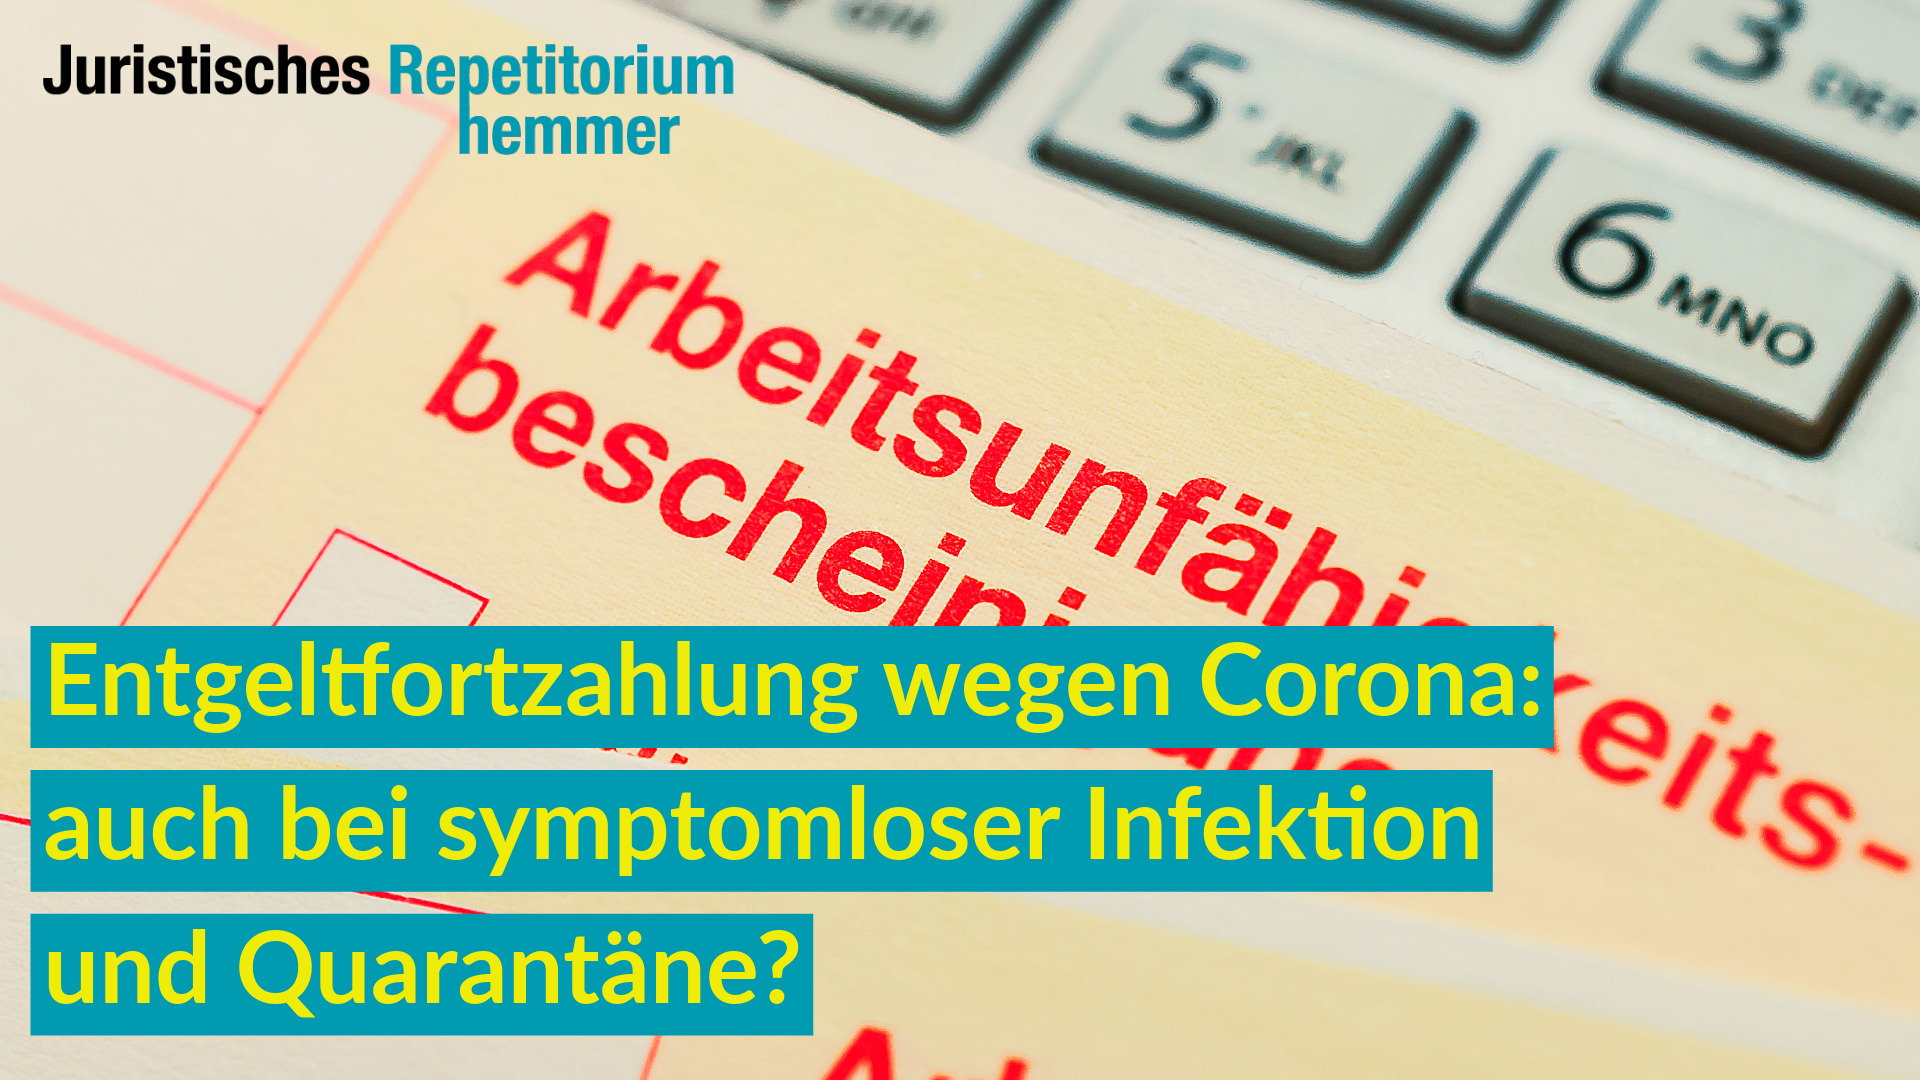 Entgeltfortzahlung wegen Corona: auch bei symptomloser Infektion und Quarantäne?